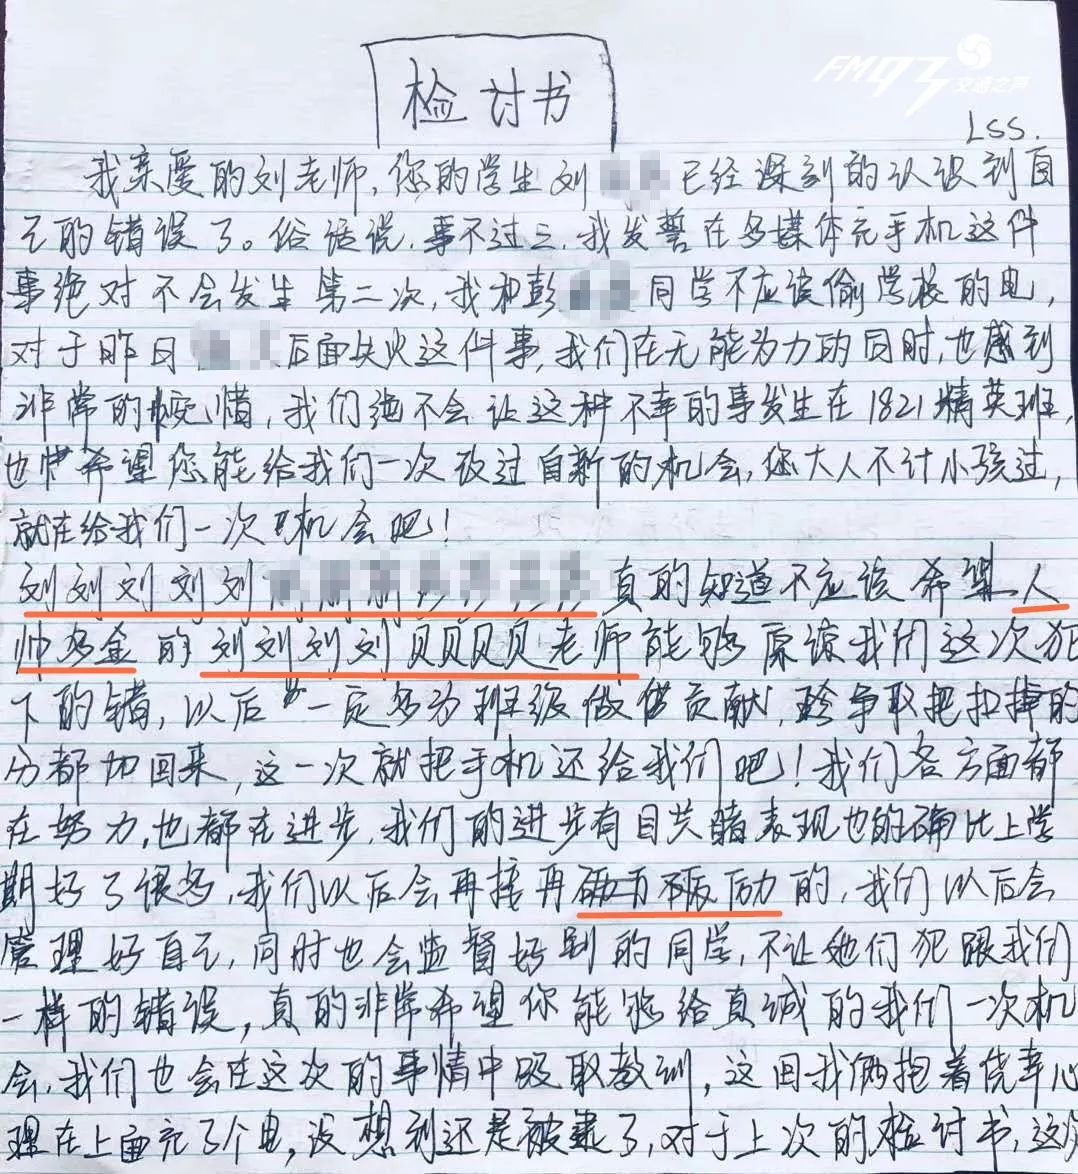 接下来看看刘同学的检讨书:还来个错别字确定能打动刘老师的心吗